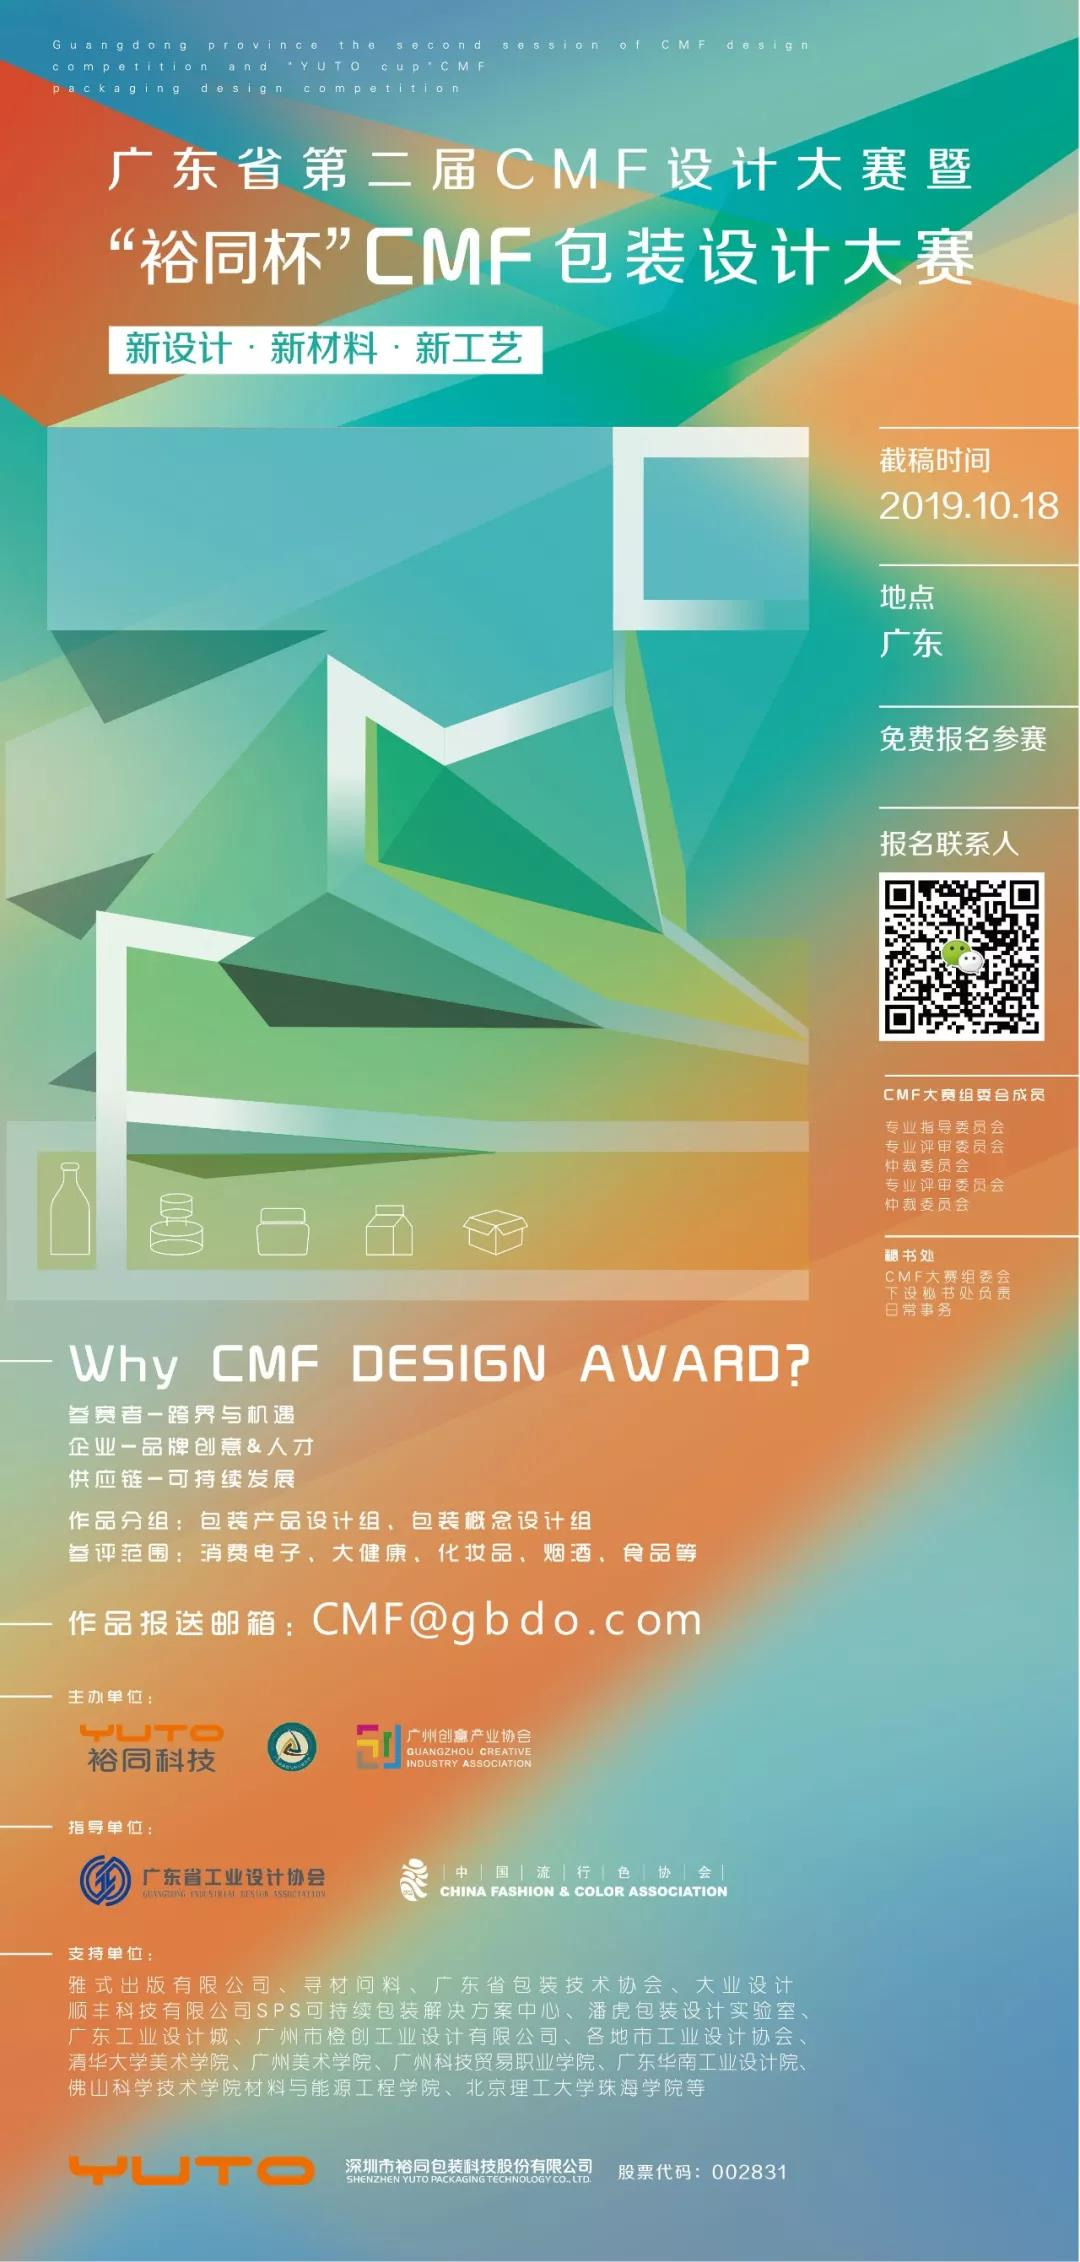 2019廣東省第二屆CMF設計大賽暨「裕同杯」CMF包裝設計大賽 EDM